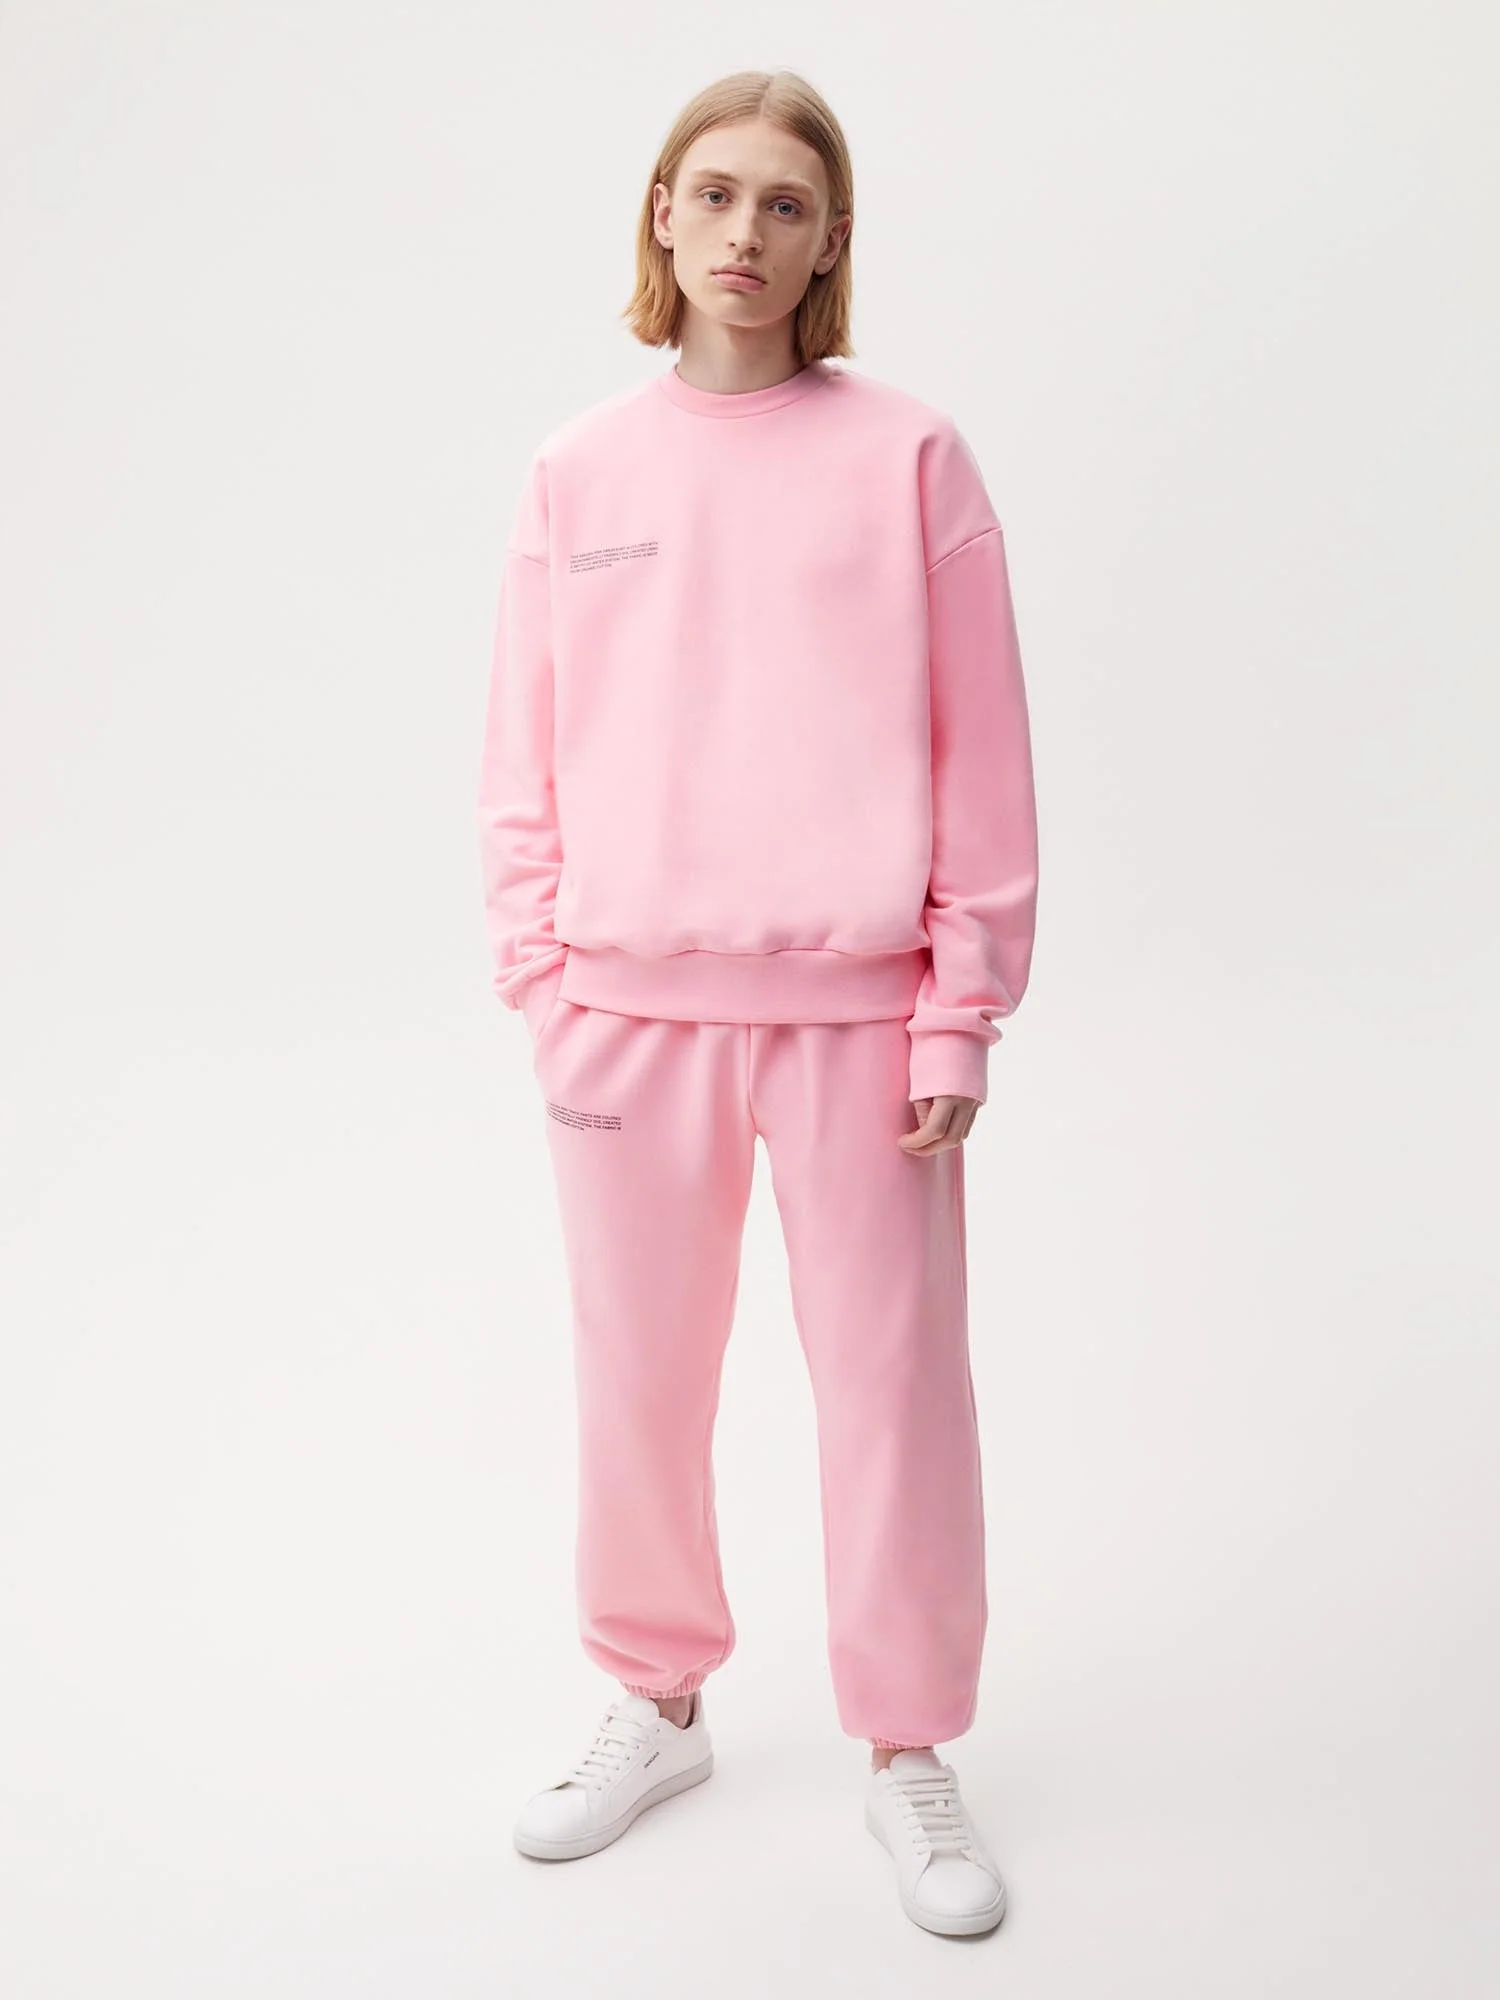 365 Sweatshirt - Pastel Tones in Sakura Pink from Pangaia 